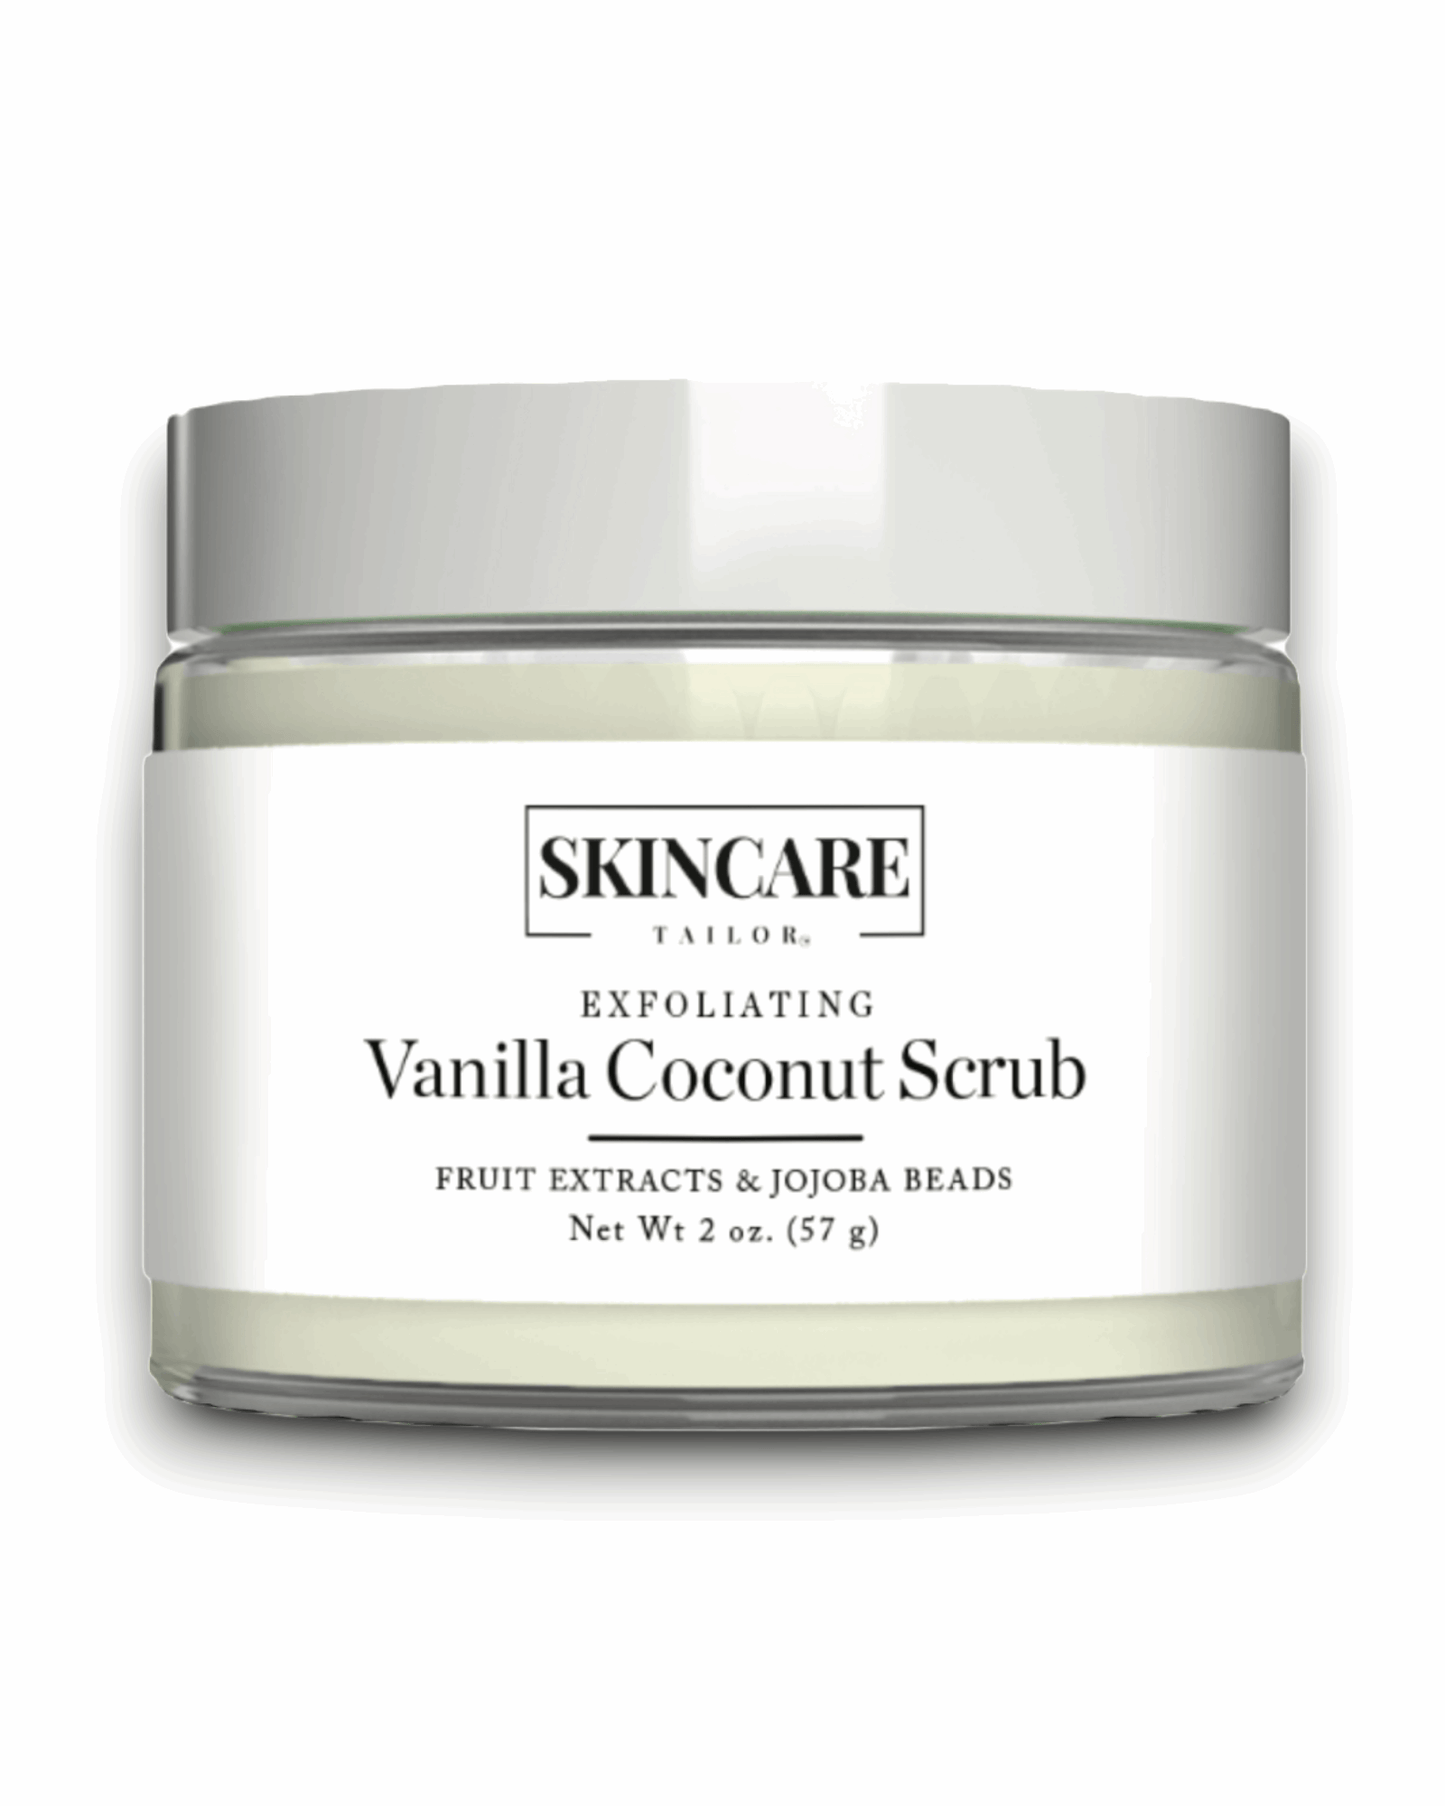 Exfoliating Vanilla Coconut Scrub | Skincare Tailor